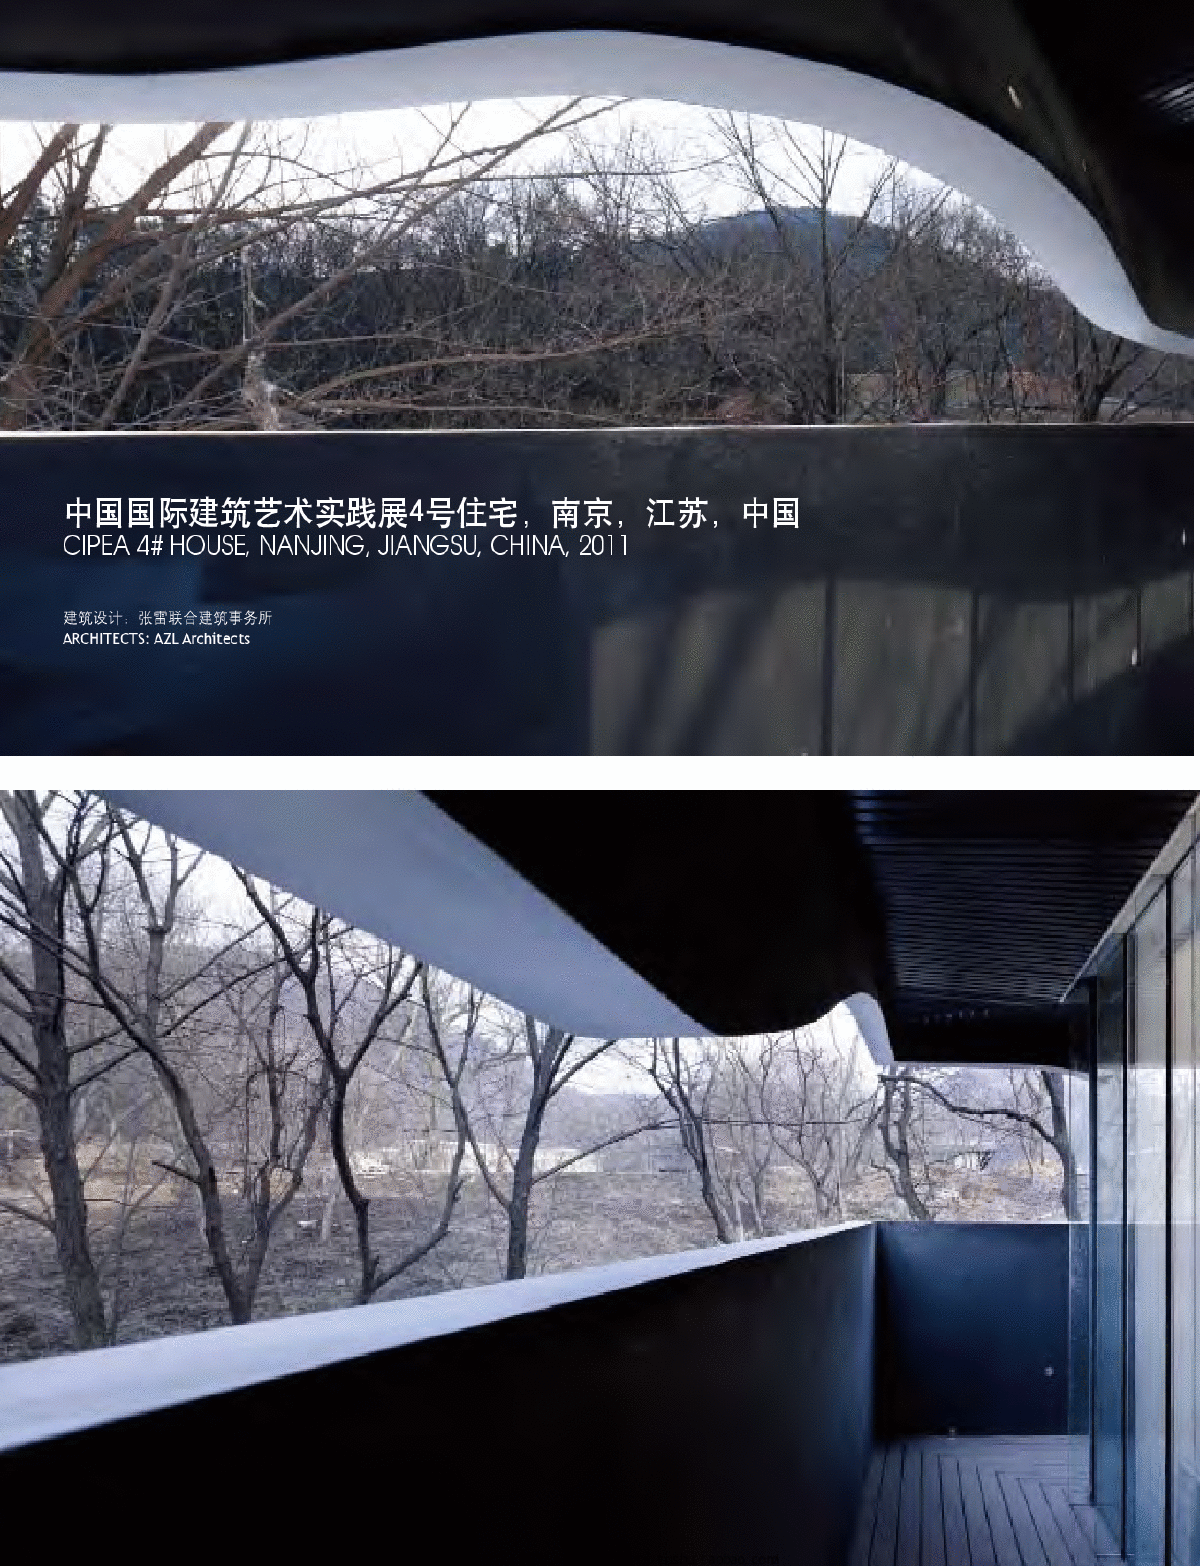 中国国际建筑艺术实践展4号住宅南京江苏中国